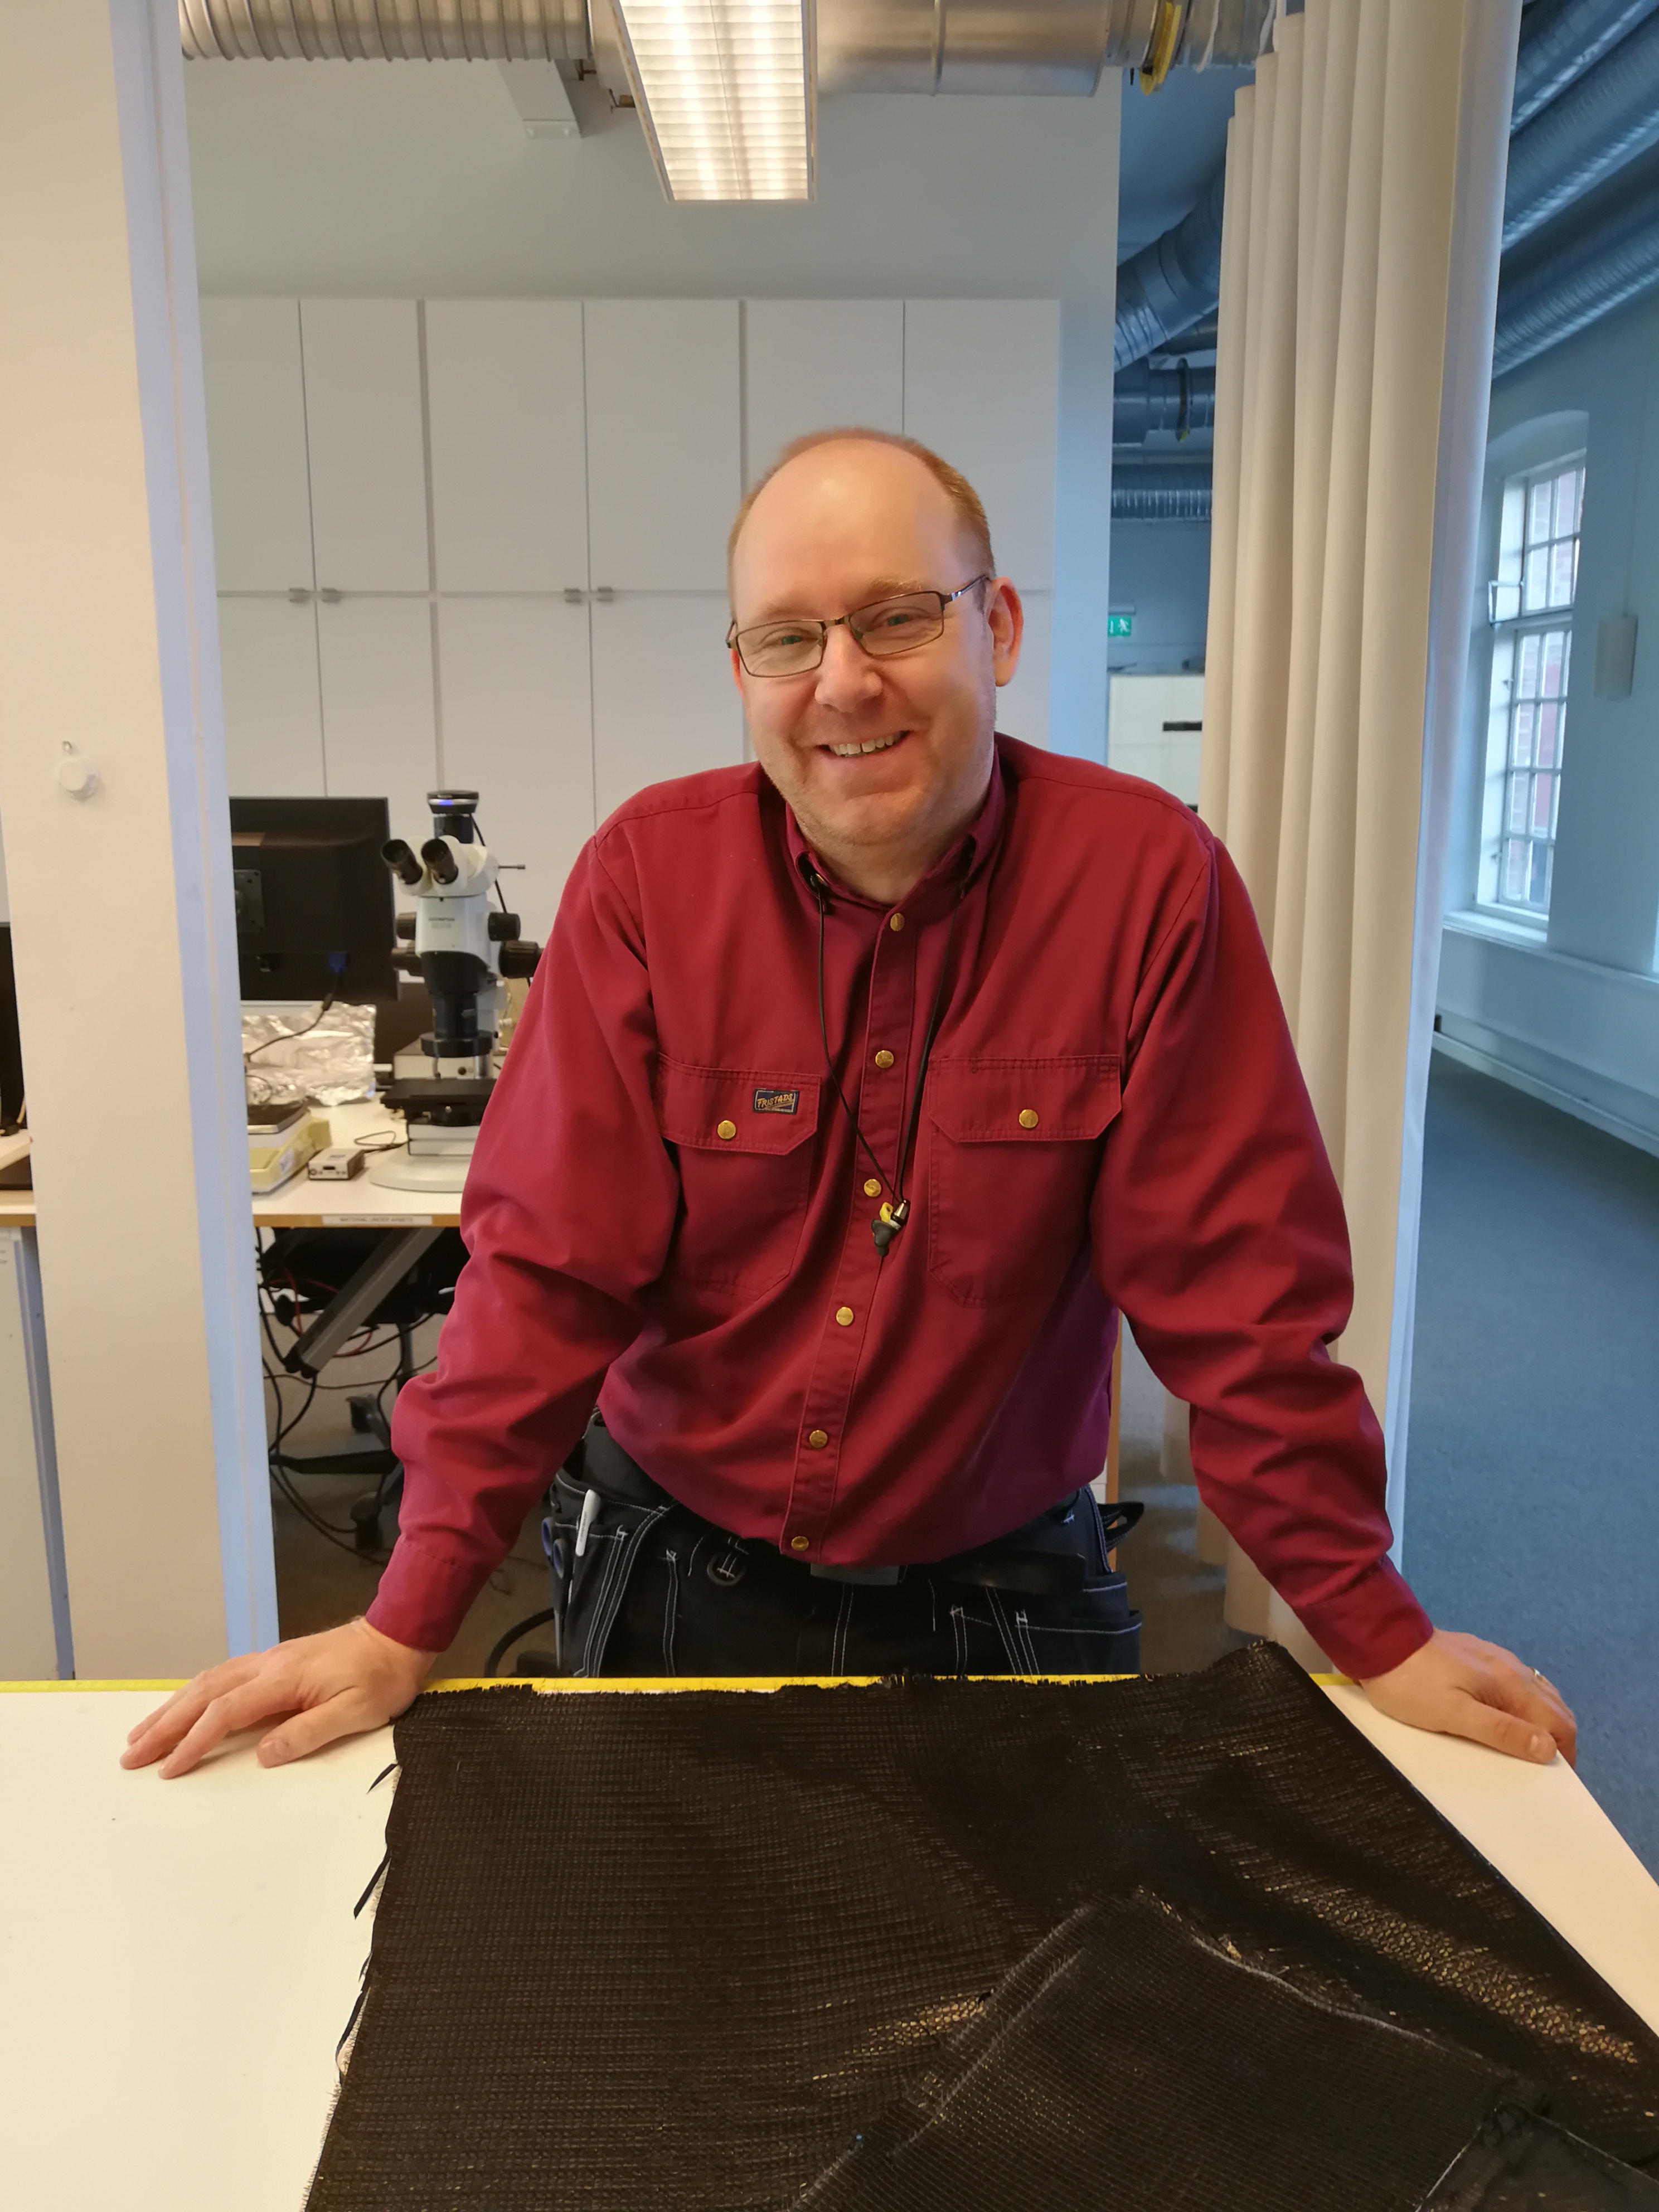 生产技术员 Magnus Hallin将 50 年来生产的遮阳和节能纺织样品带到了研发会议上。